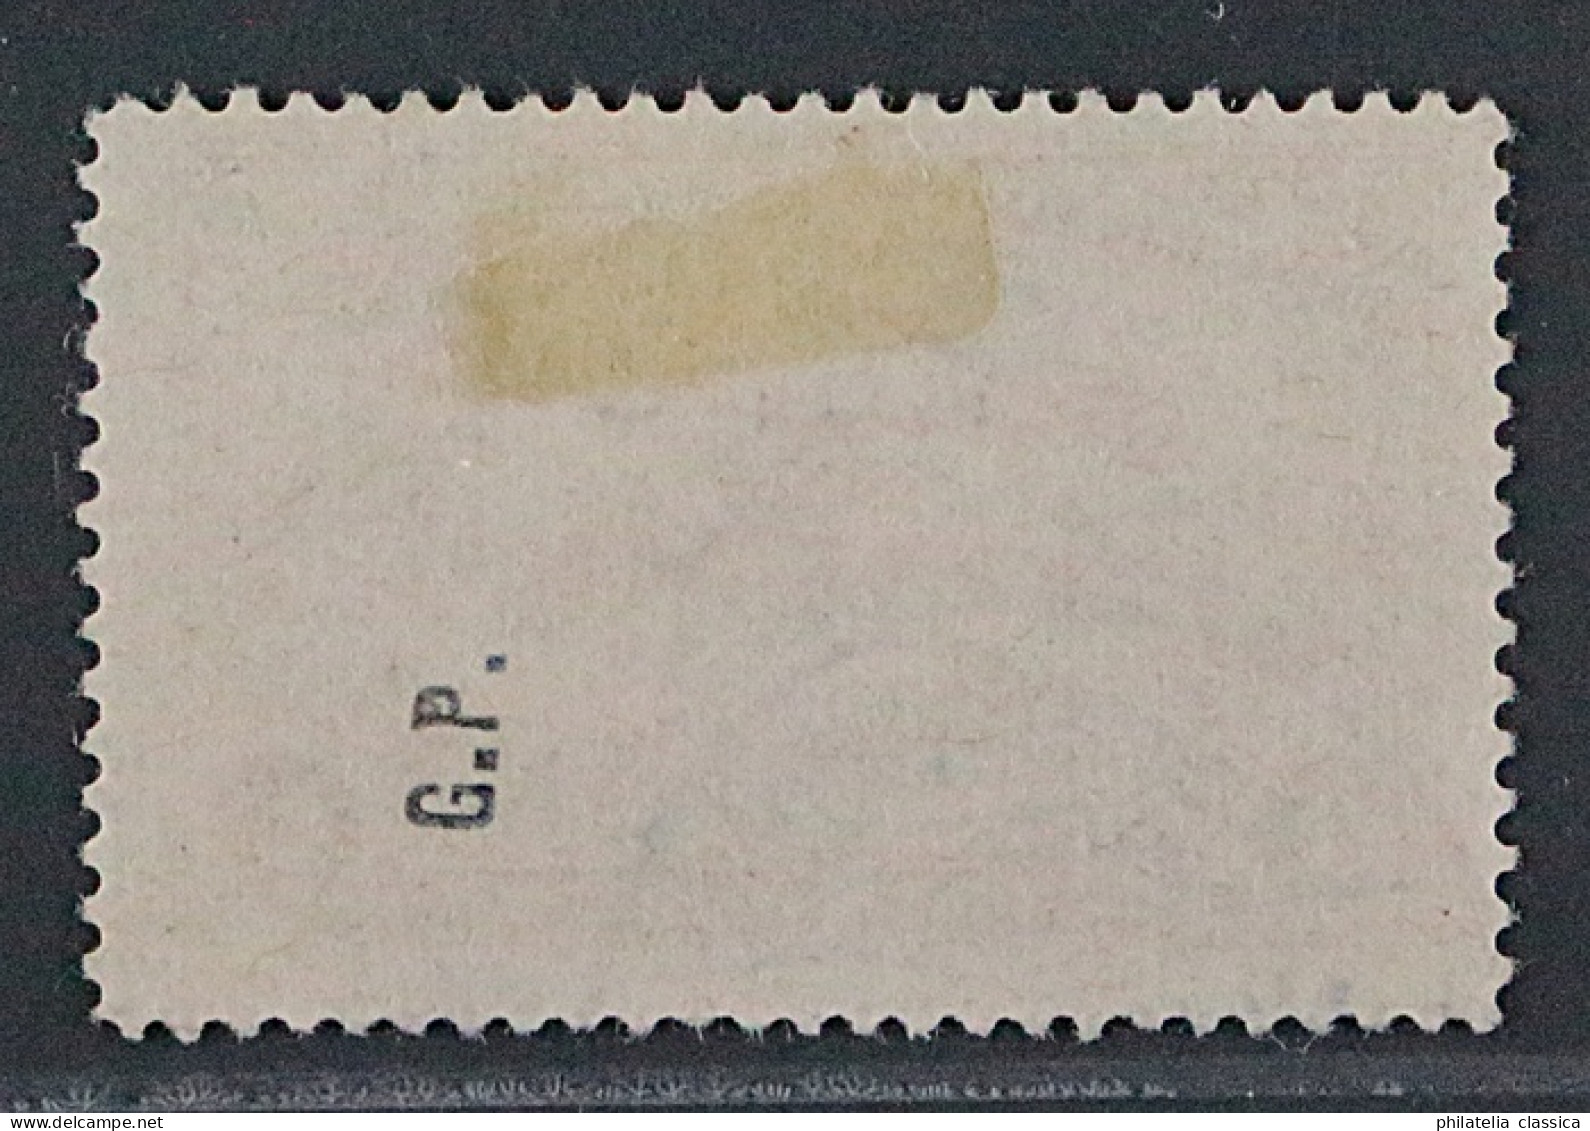 1914, Türkei 257 DD, Kapitulationen 5 Pia. DOPPEL-AUFDRUCK, Sehr SELTEN - Used Stamps